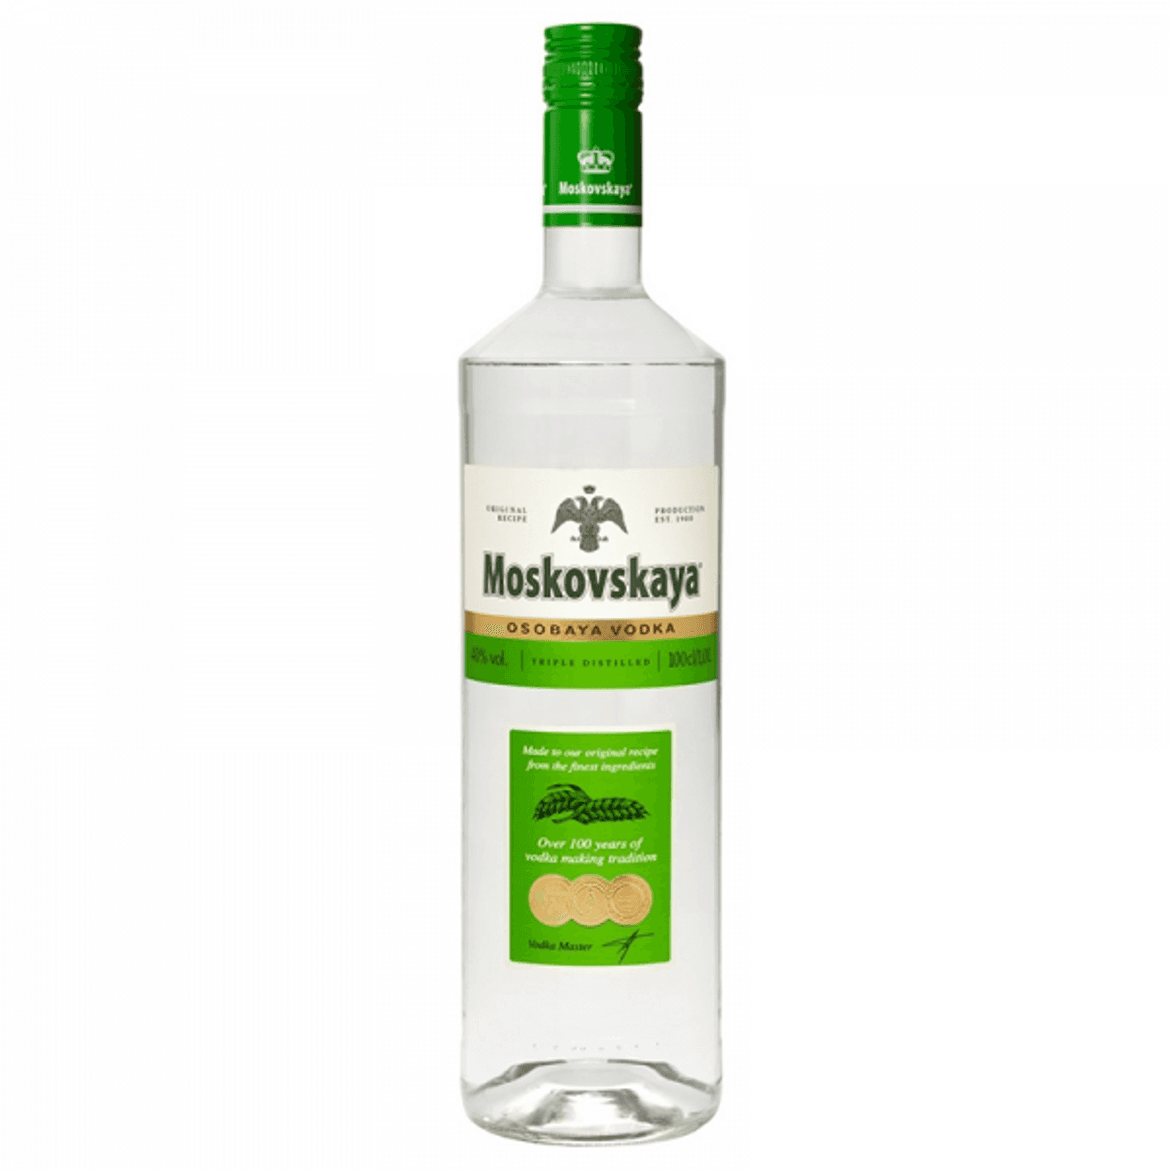 Moskovskaya vodka 40%